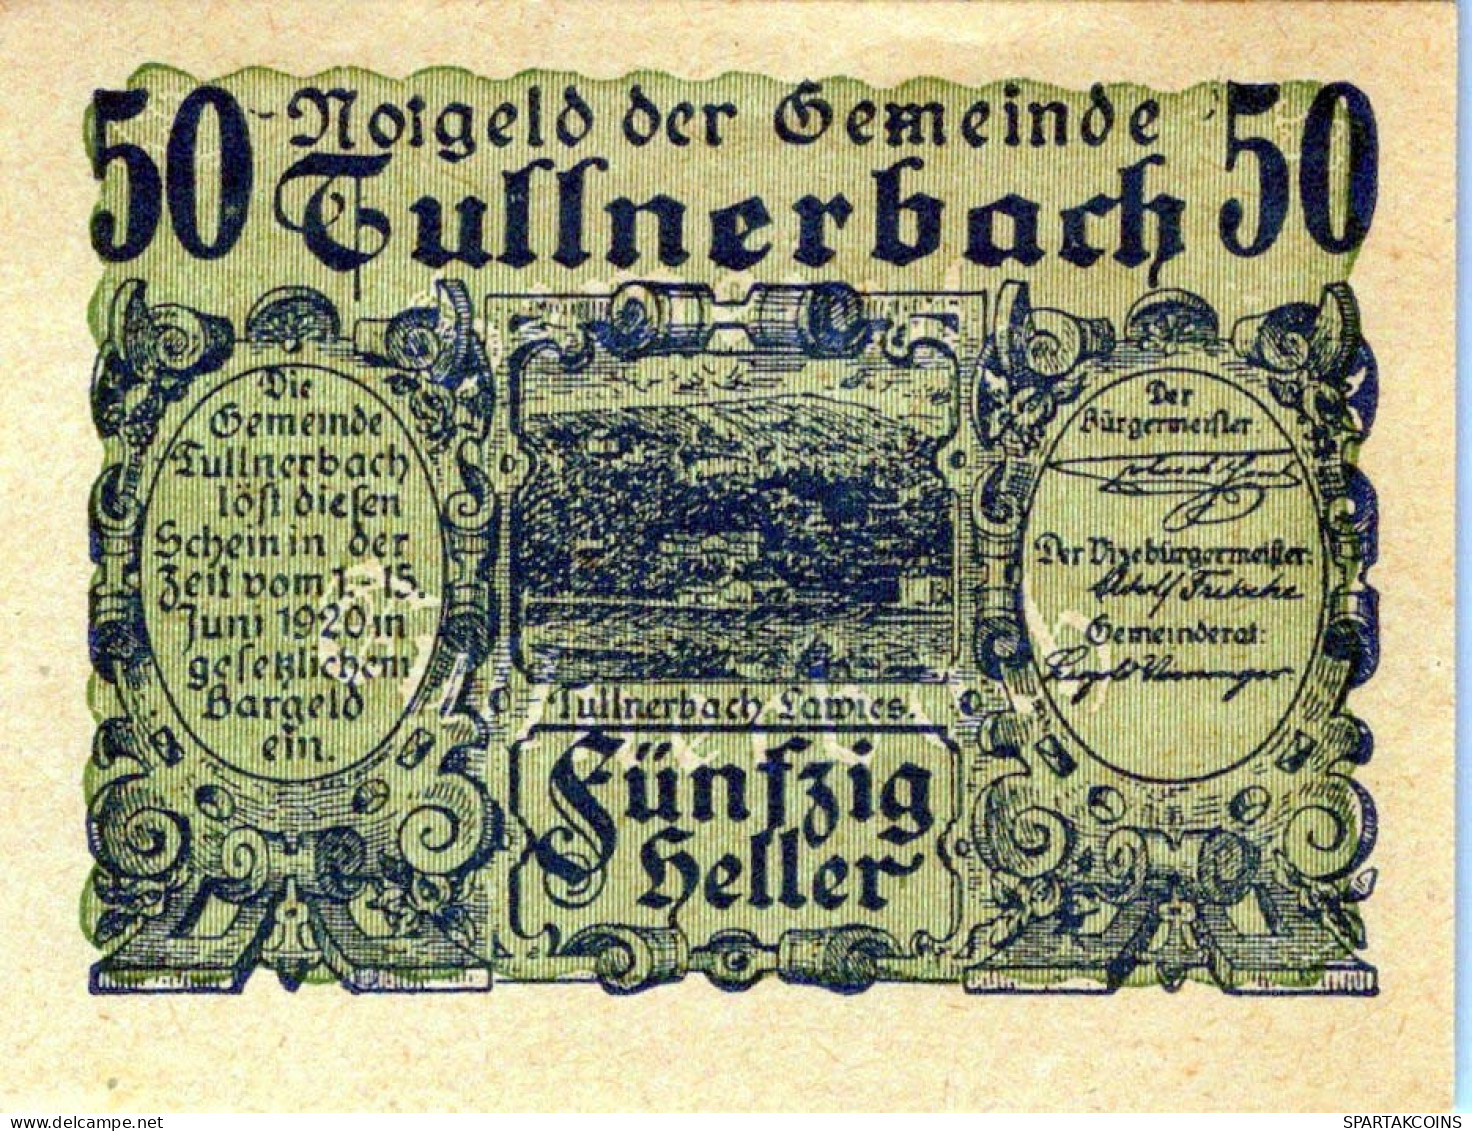 50 HELLER 1920 Stadt Tullnerbach Niedrigeren Österreich Notgeld #PF253 - [11] Emissions Locales